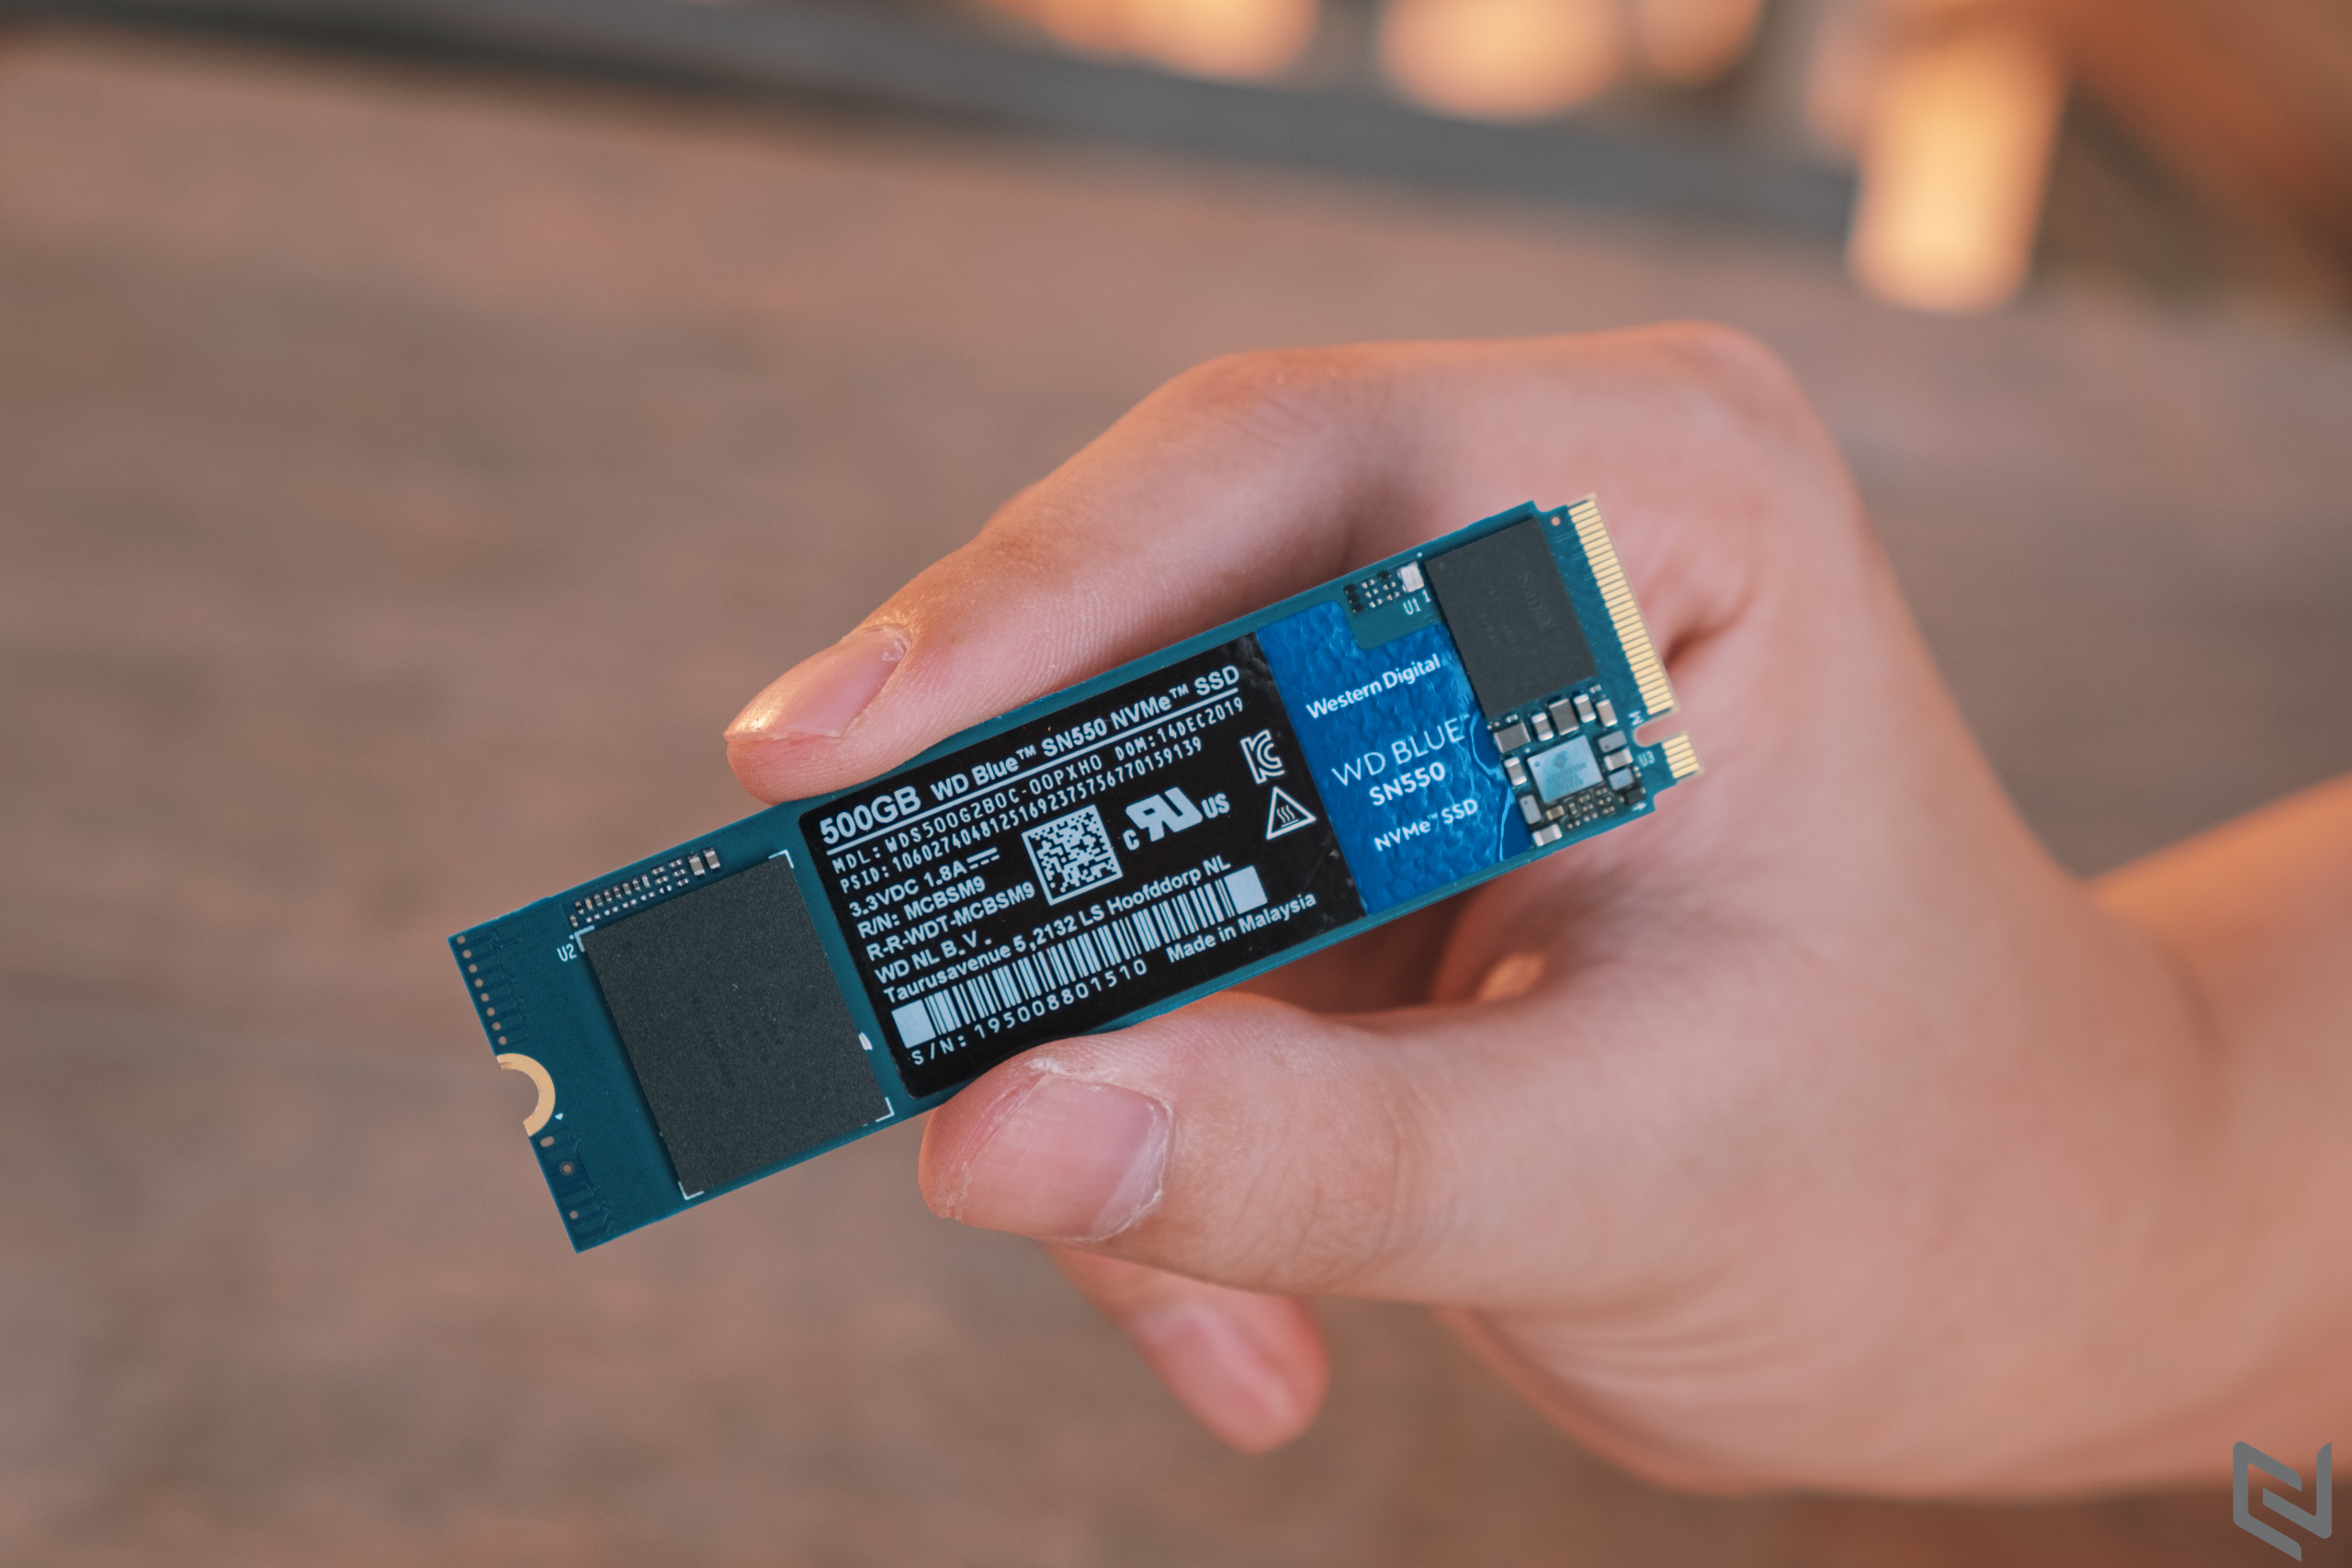 Western Digital xác nhận giá SSD sắp tăng vì sự cố nhiễm bẩn 6.5 exabyte chip nhớ